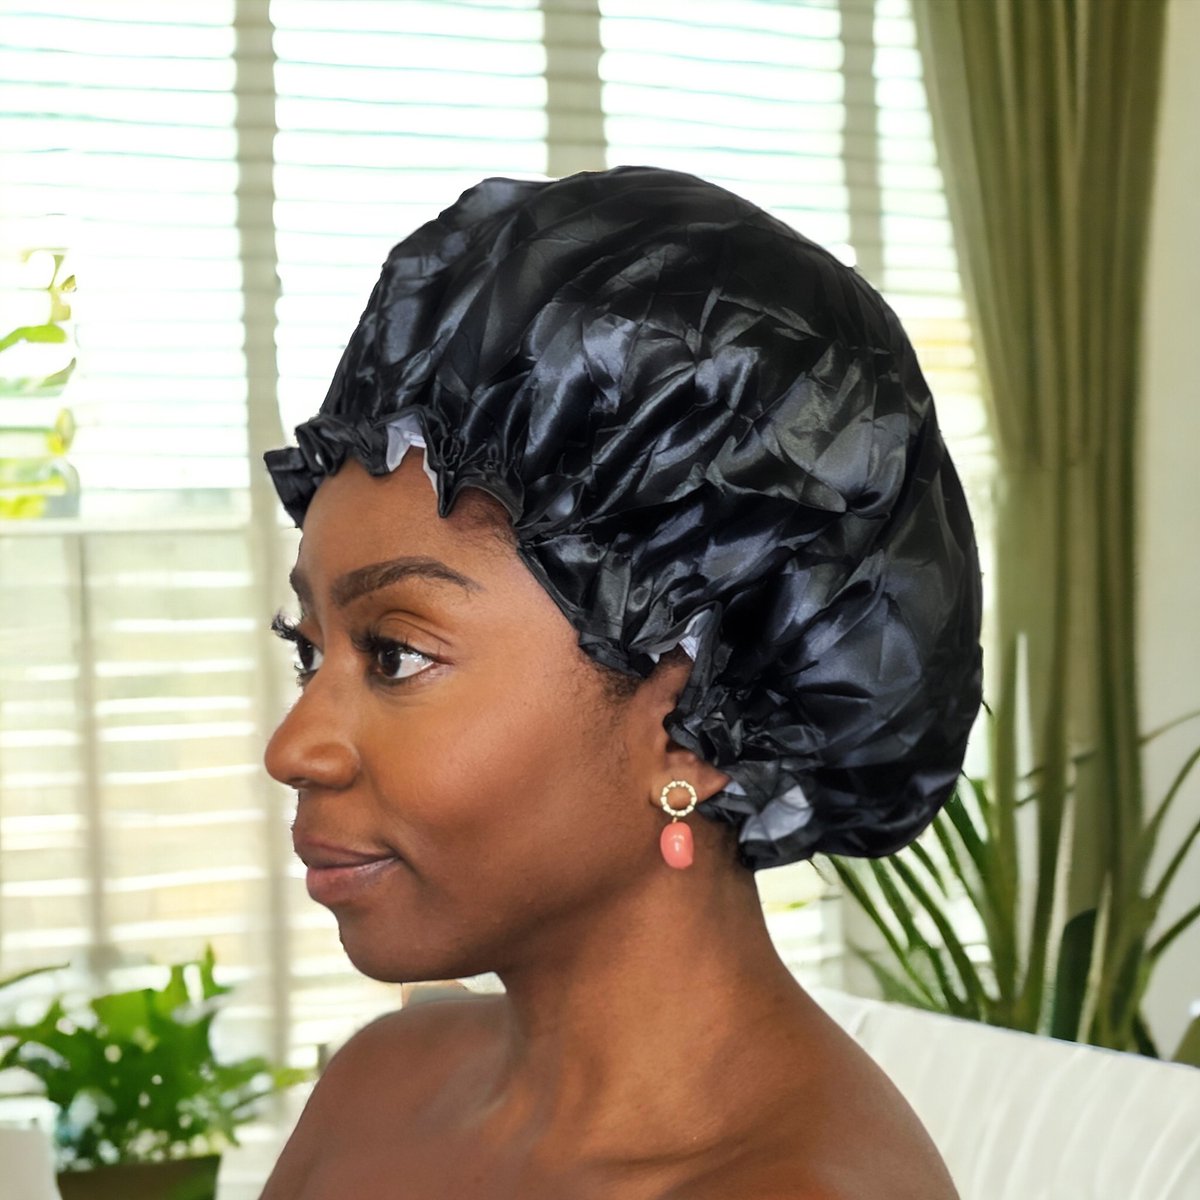 Luxe Grote Douchemuts / Shower cap / Douchekapje / Douche cap voor vol haar / krullen / afro AfricanFabs® - Zwart - AfricanFabs